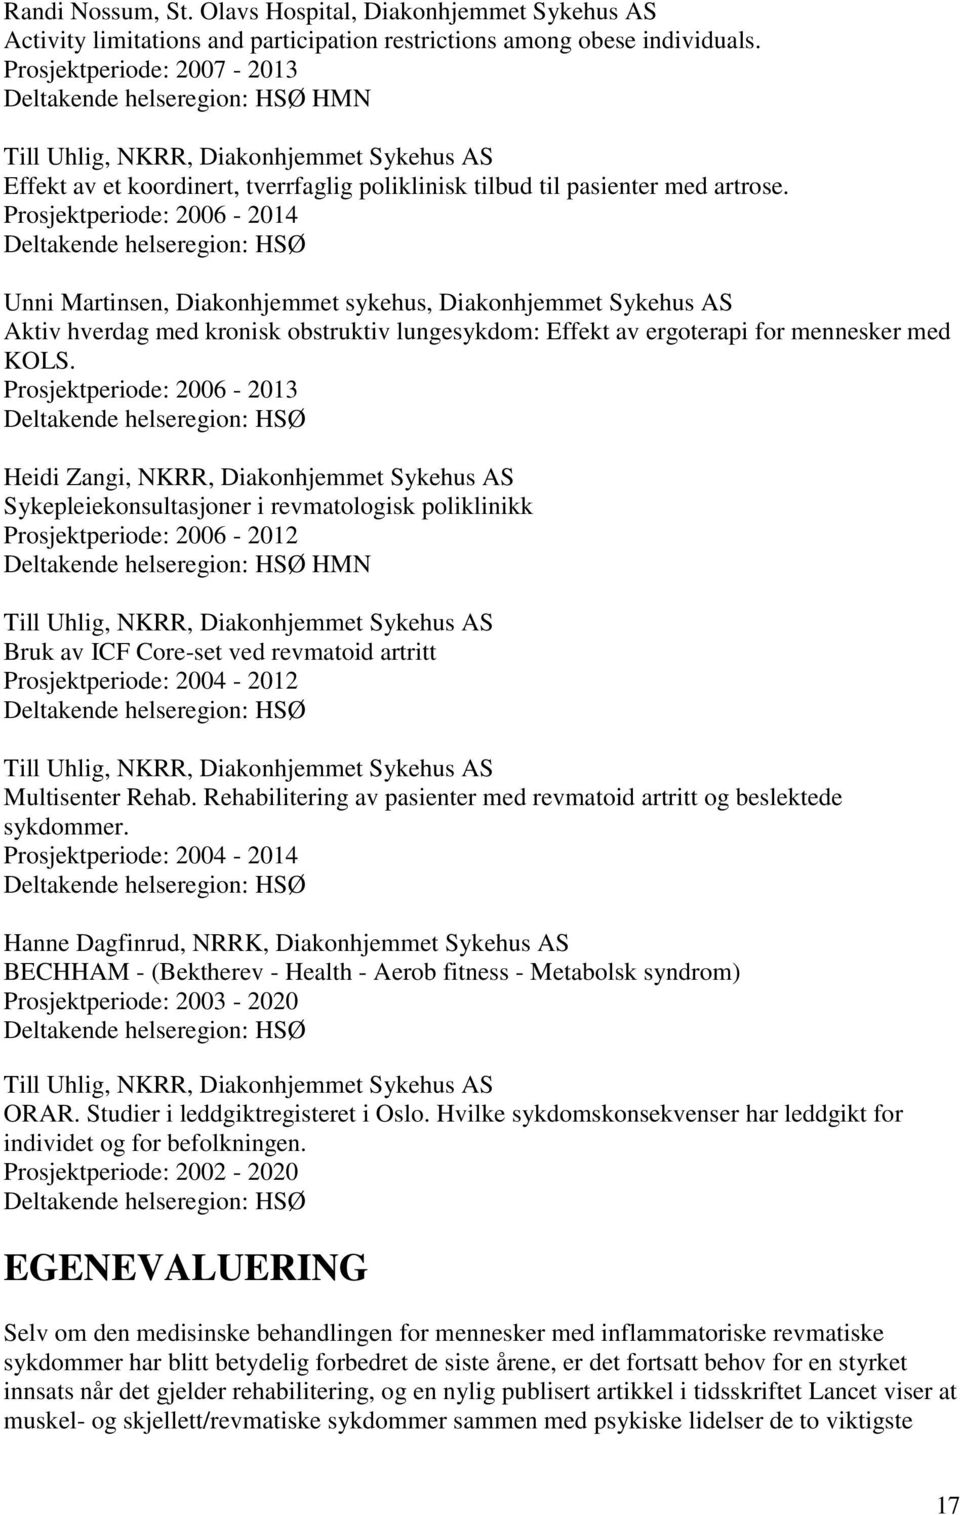 Prosjektperiode: 2006-2014 Unni Martinsen, Diakonhjemmet sykehus, Diakonhjemmet Sykehus AS Aktiv hverdag med kronisk obstruktiv lungesykdom: Effekt av ergoterapi for mennesker med KOLS.